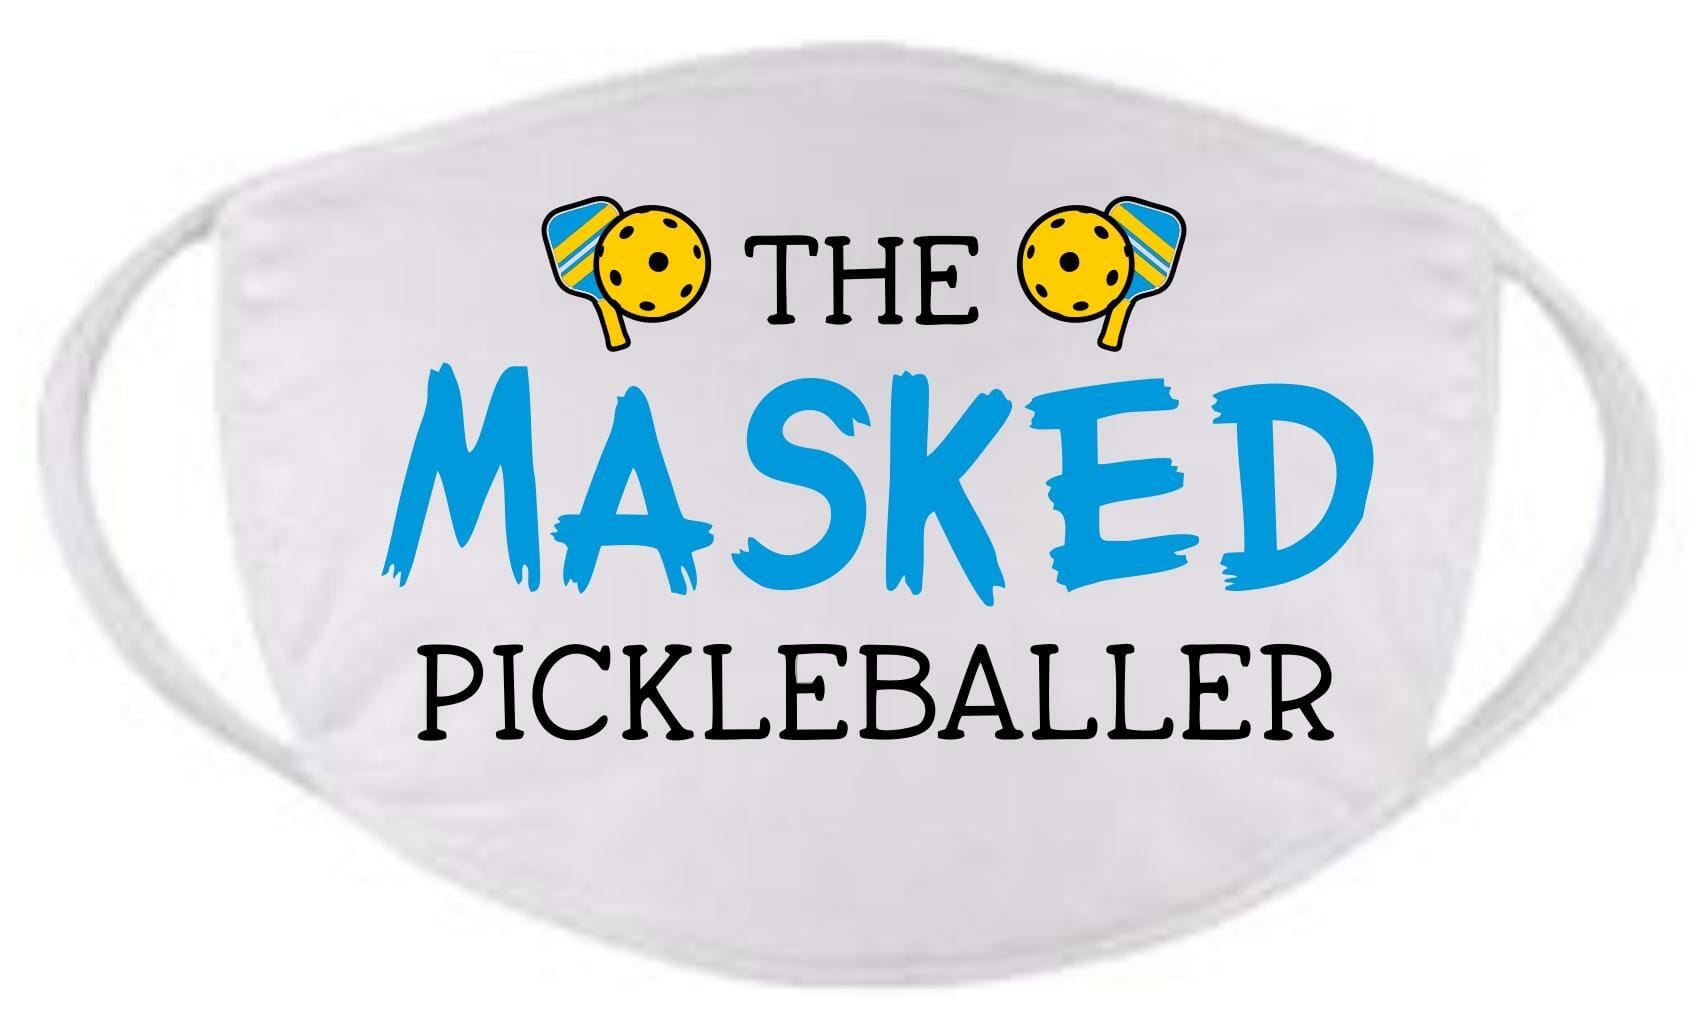 The Masked Pickleballer face mask